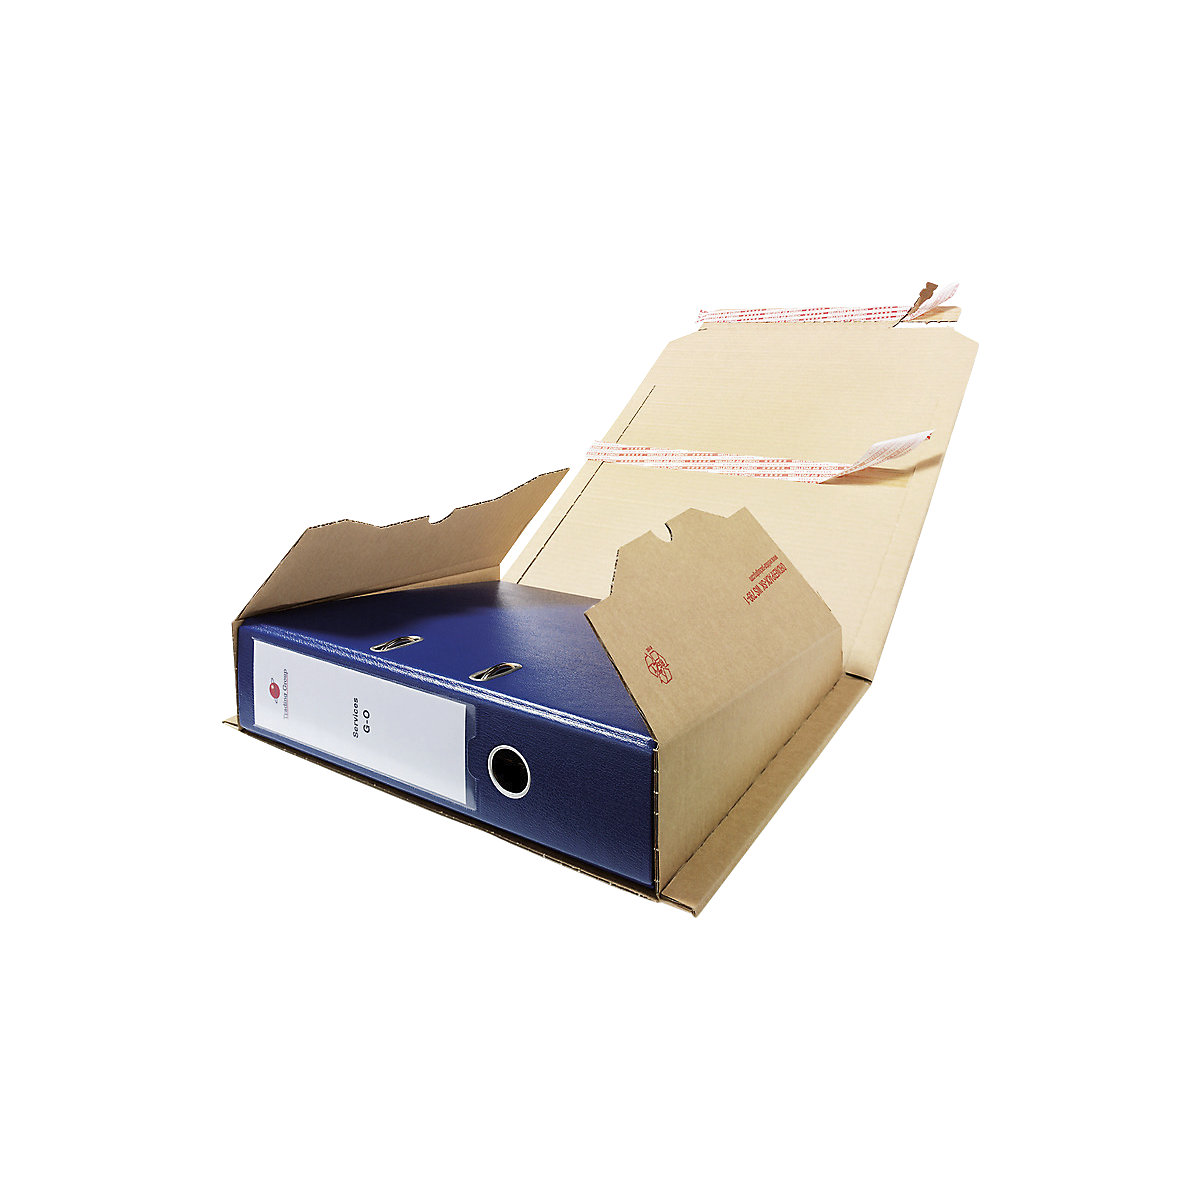 Imballaggio per raccoglitori, scatole di cartone per raccoglitori - flow